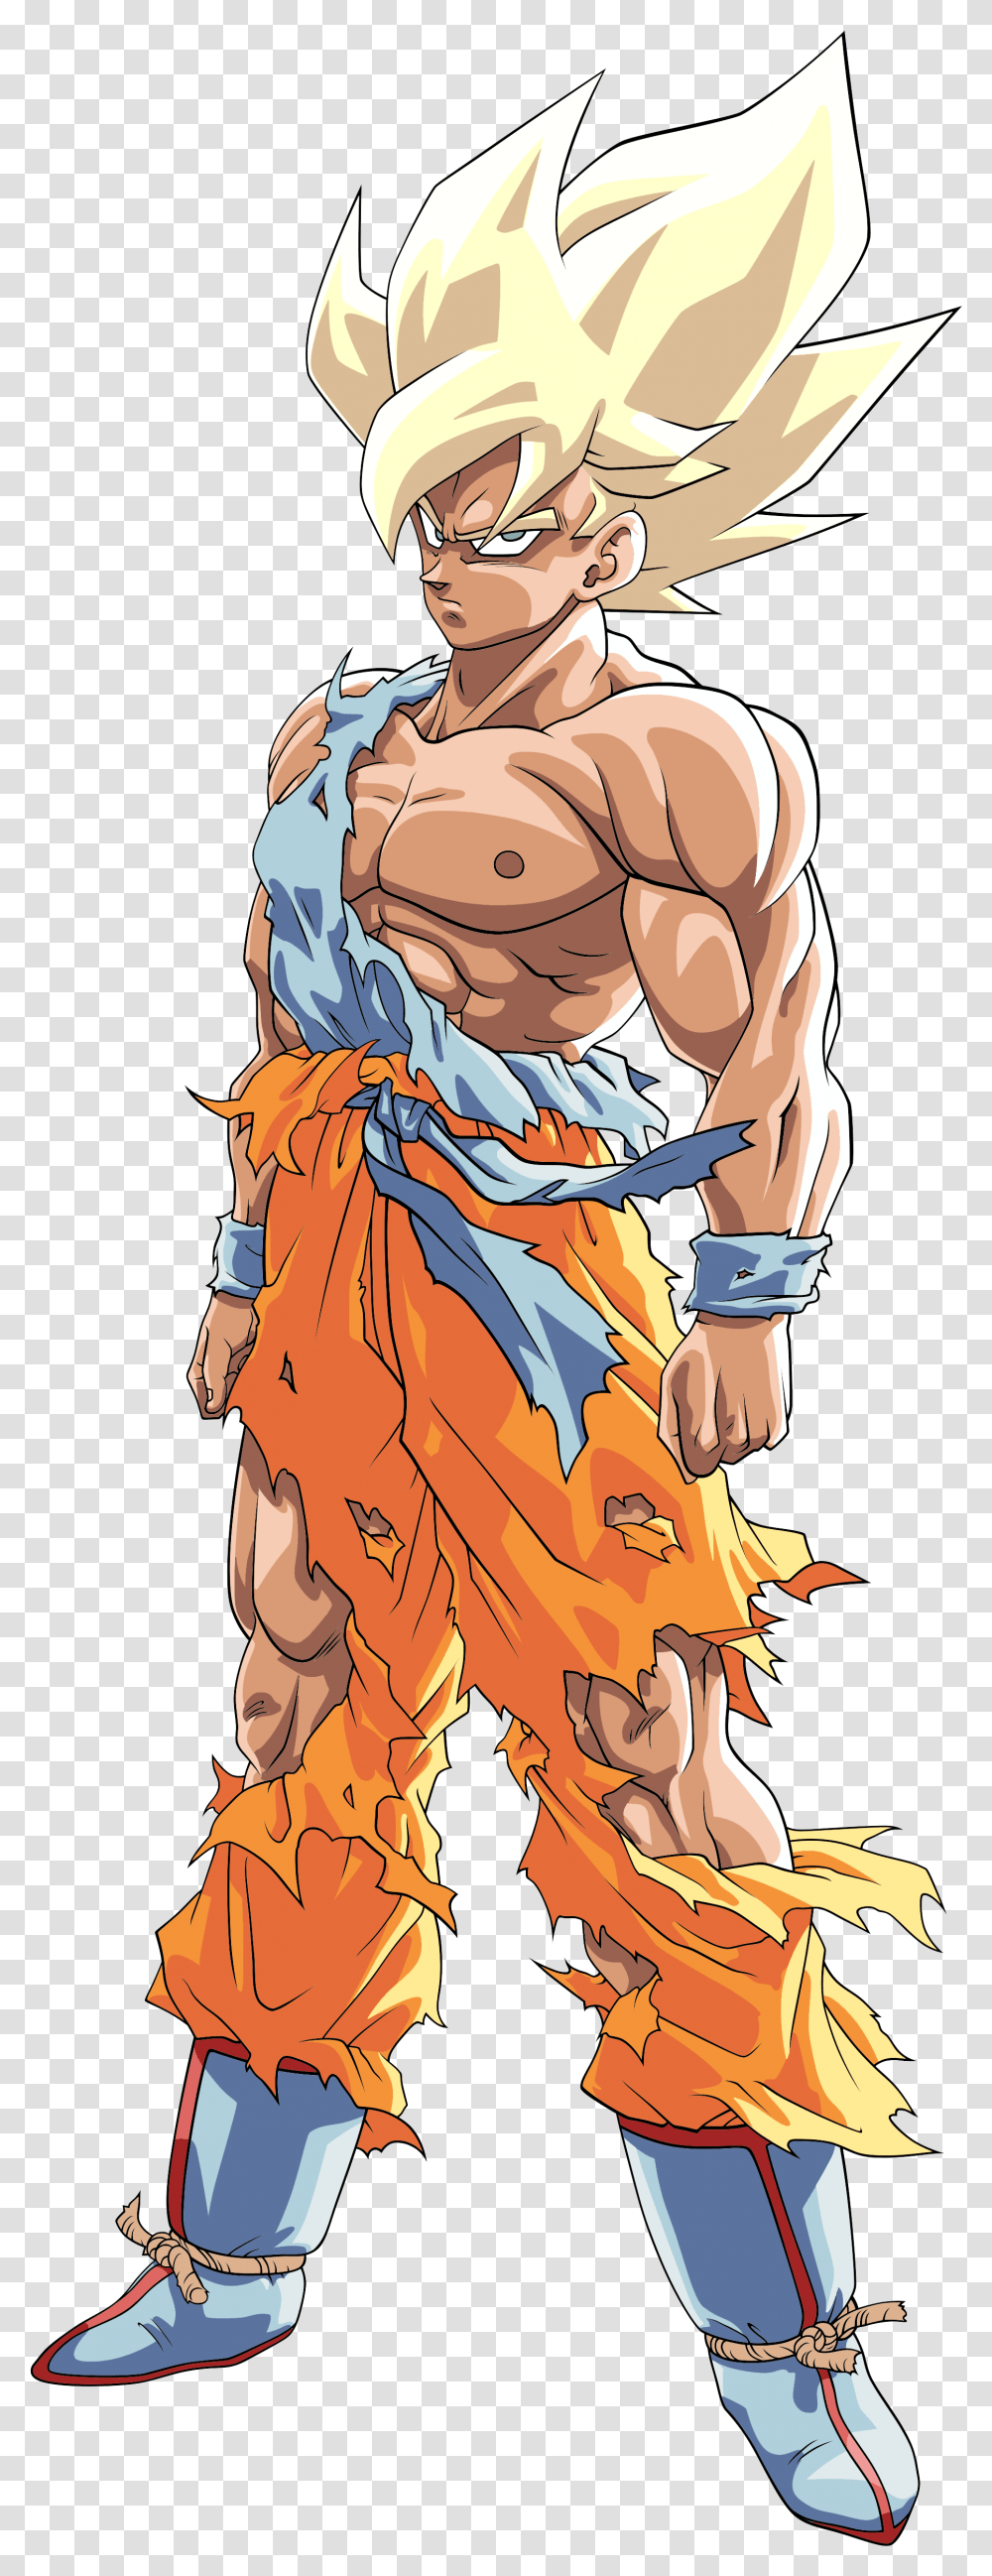 Goku Super Saiyan Dbz, Person, Human, Apparel Transparent Png